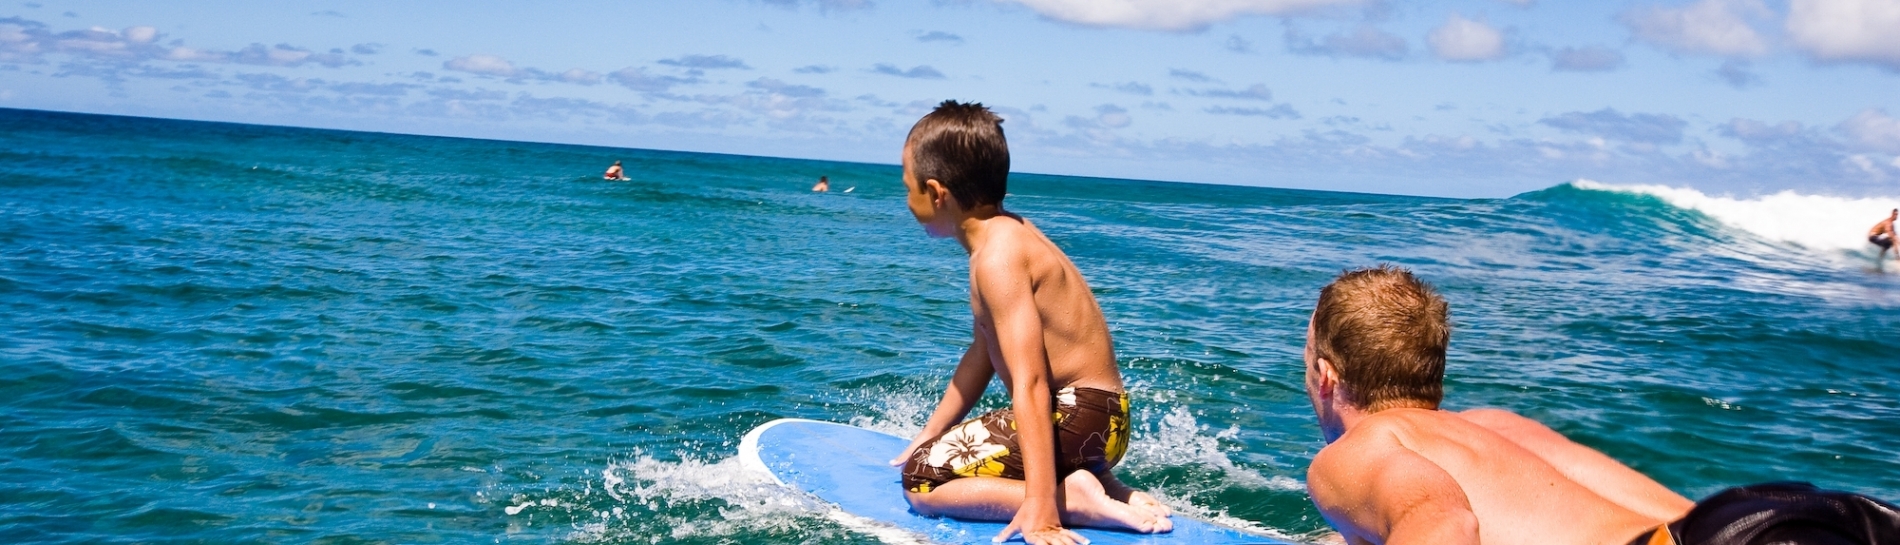 Hawaii vacation surfing boys